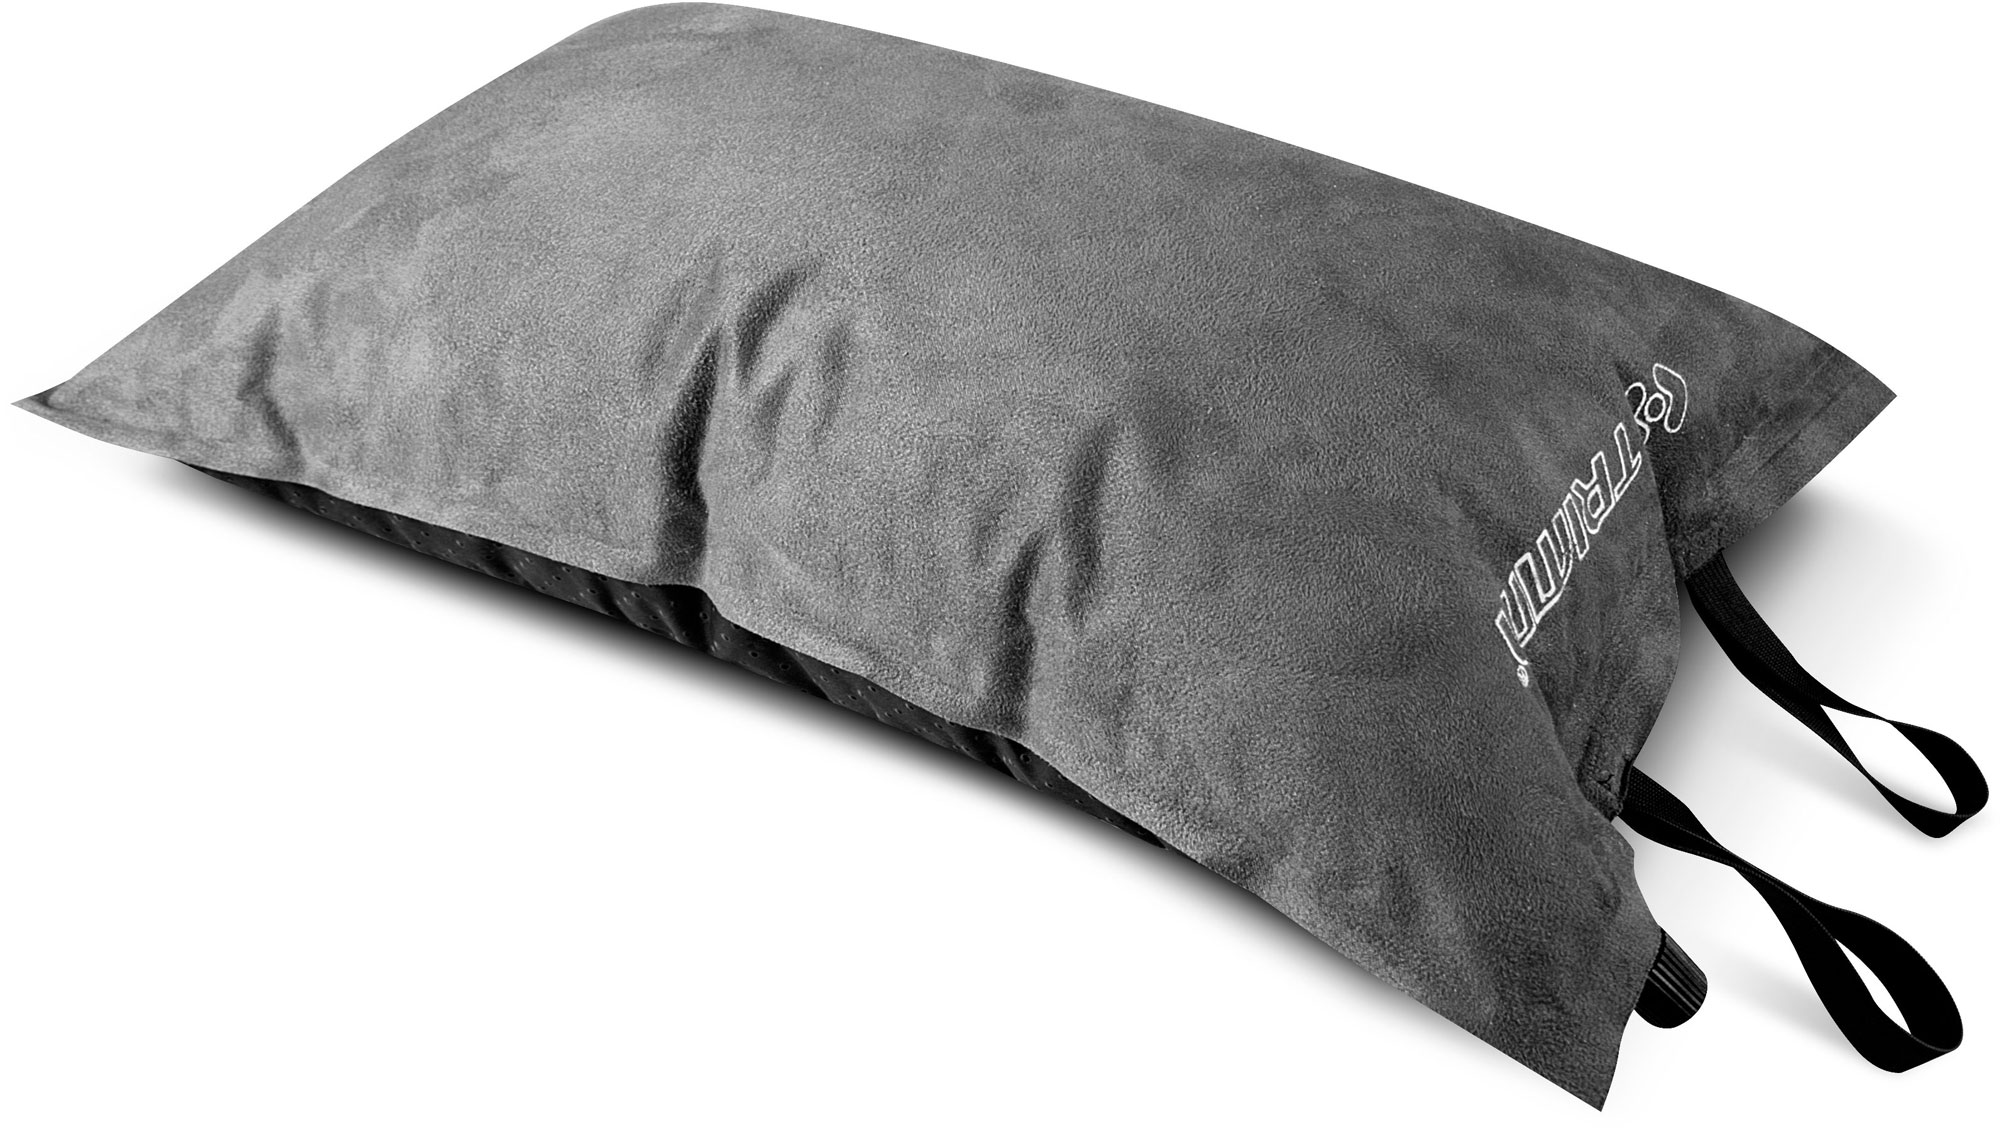 Self-inflating pillow